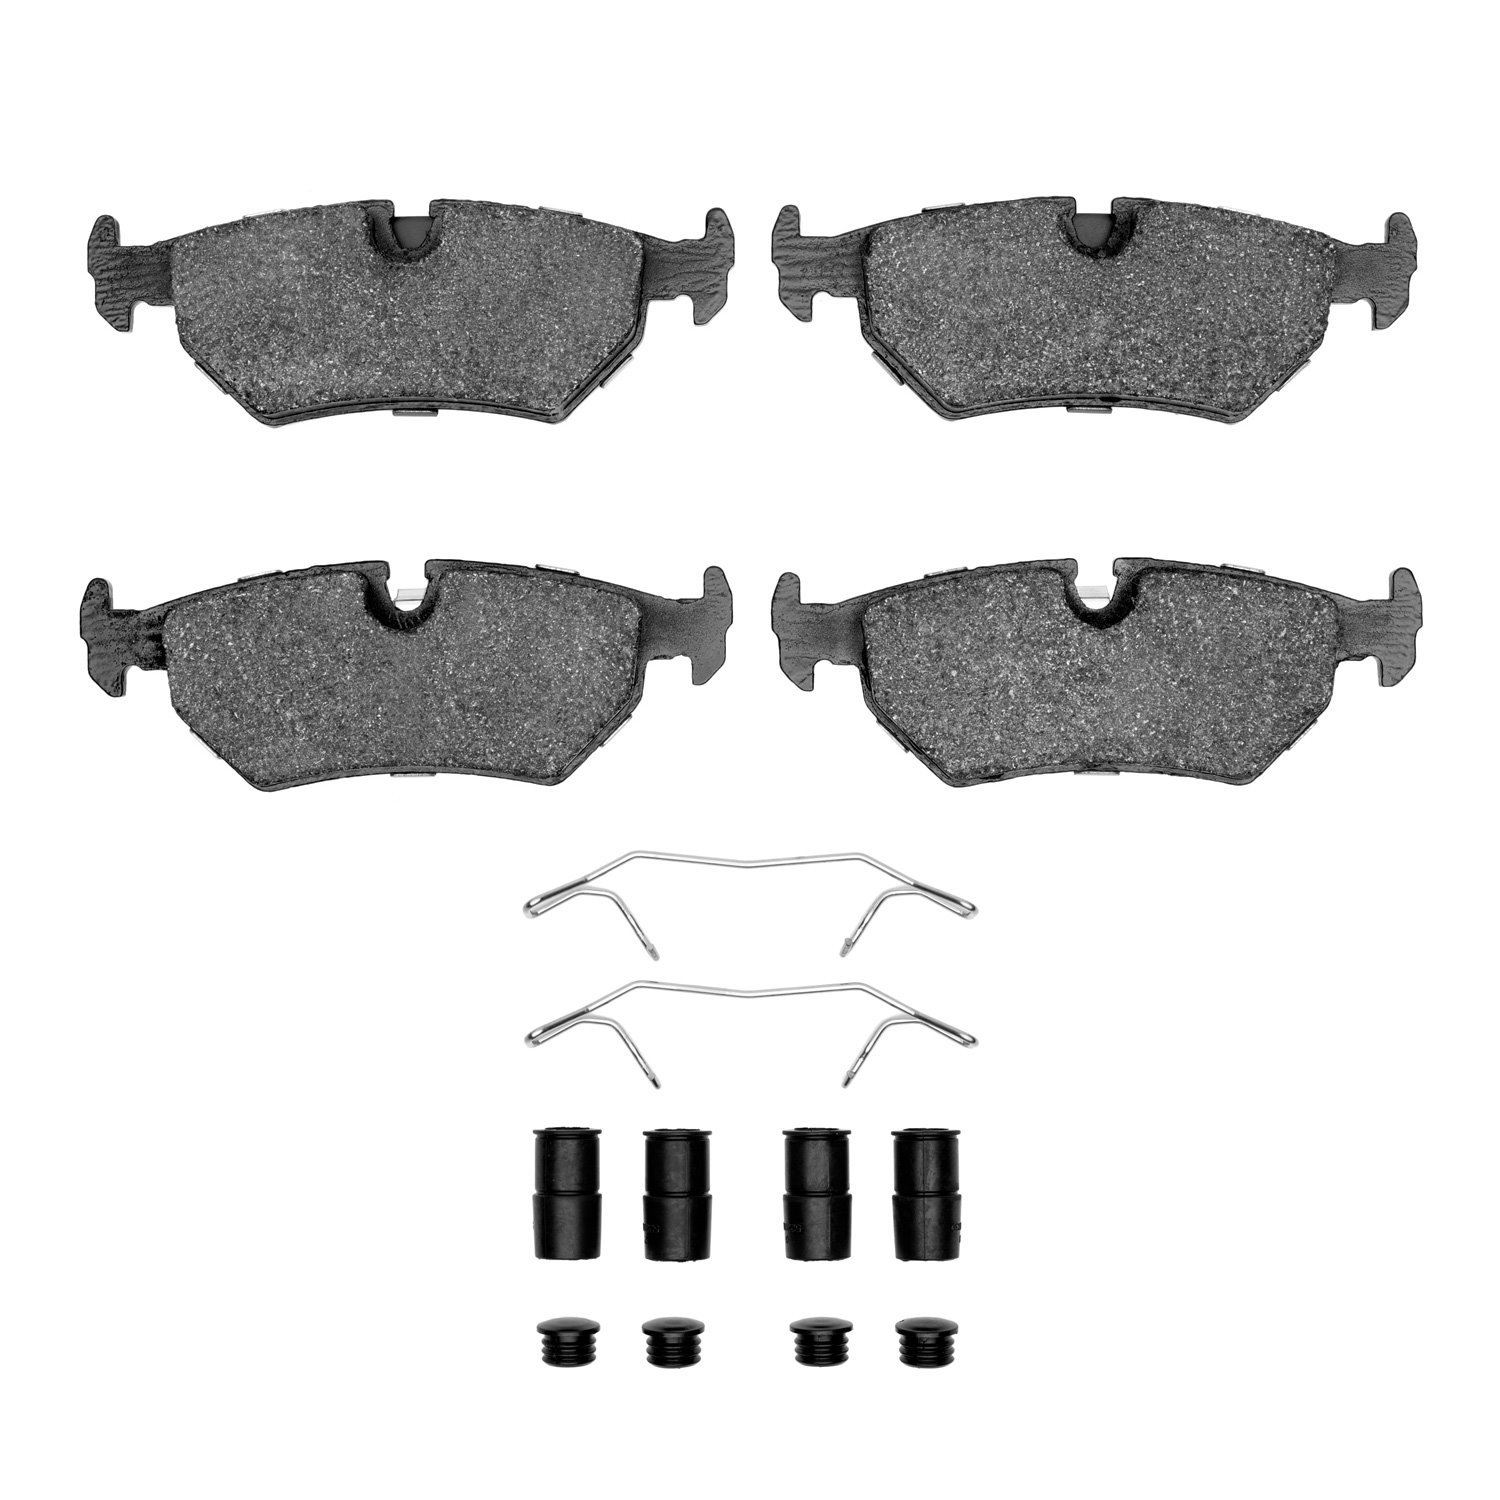 1311-0517-01 3000-Series Semi-Metallic Brake Pads & Hardware Kit, 1990-1995 Jaguar, Position: Rear